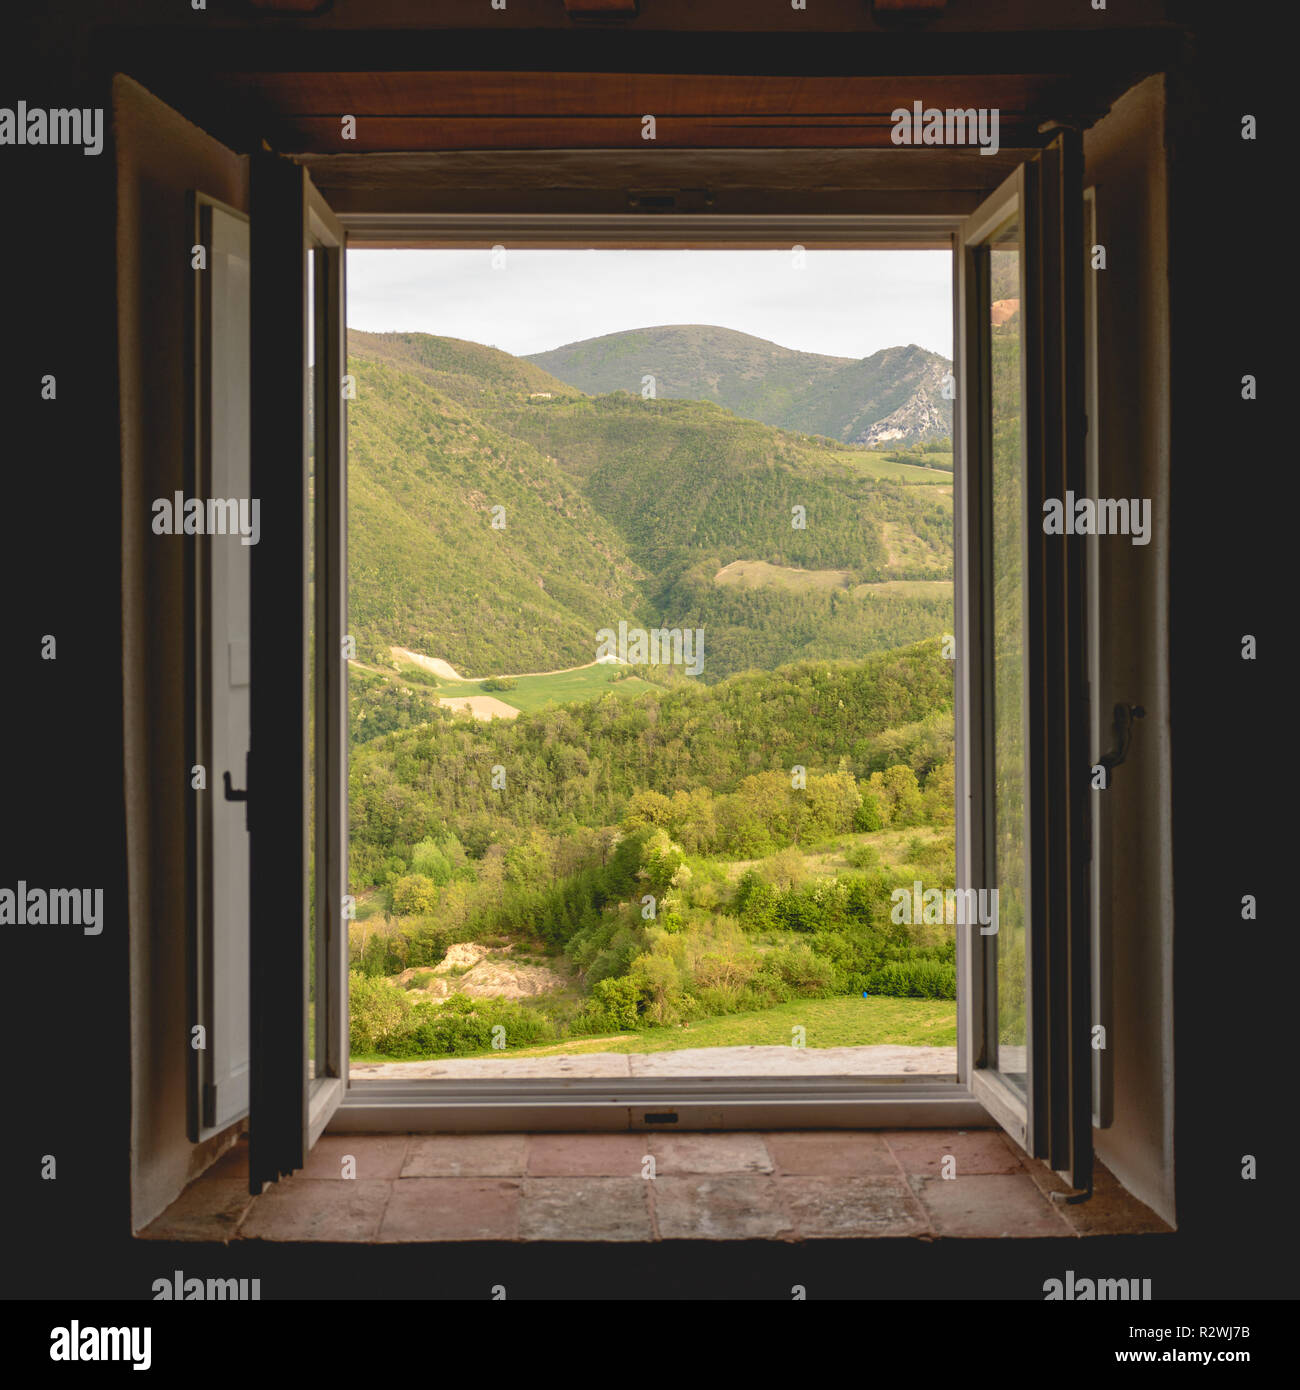 Vue sur une vallée verdoyante et les montagnes dans la région italienne de l'Ombrie à travers la fenêtre ouverte d'un bâtiment rural. Format carré. Banque D'Images